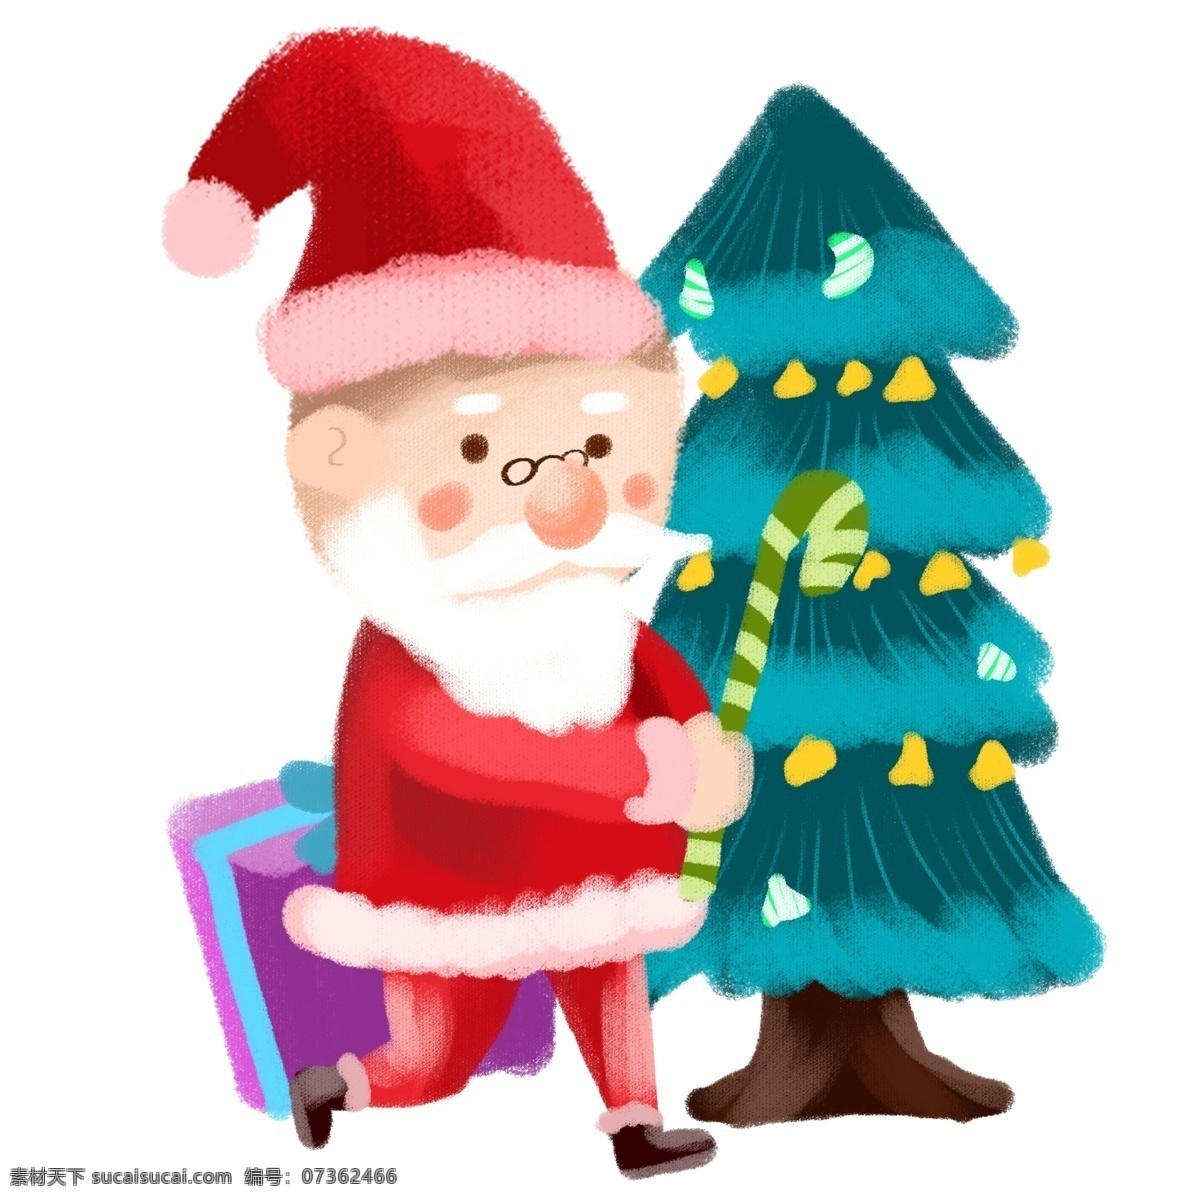 圣诞老人 圣诞树 涂鸦 圣诞节 涂鸦插画 圣诞节插画 圣诞夜 圣诞 圣诞礼物 礼物 礼盒 插画